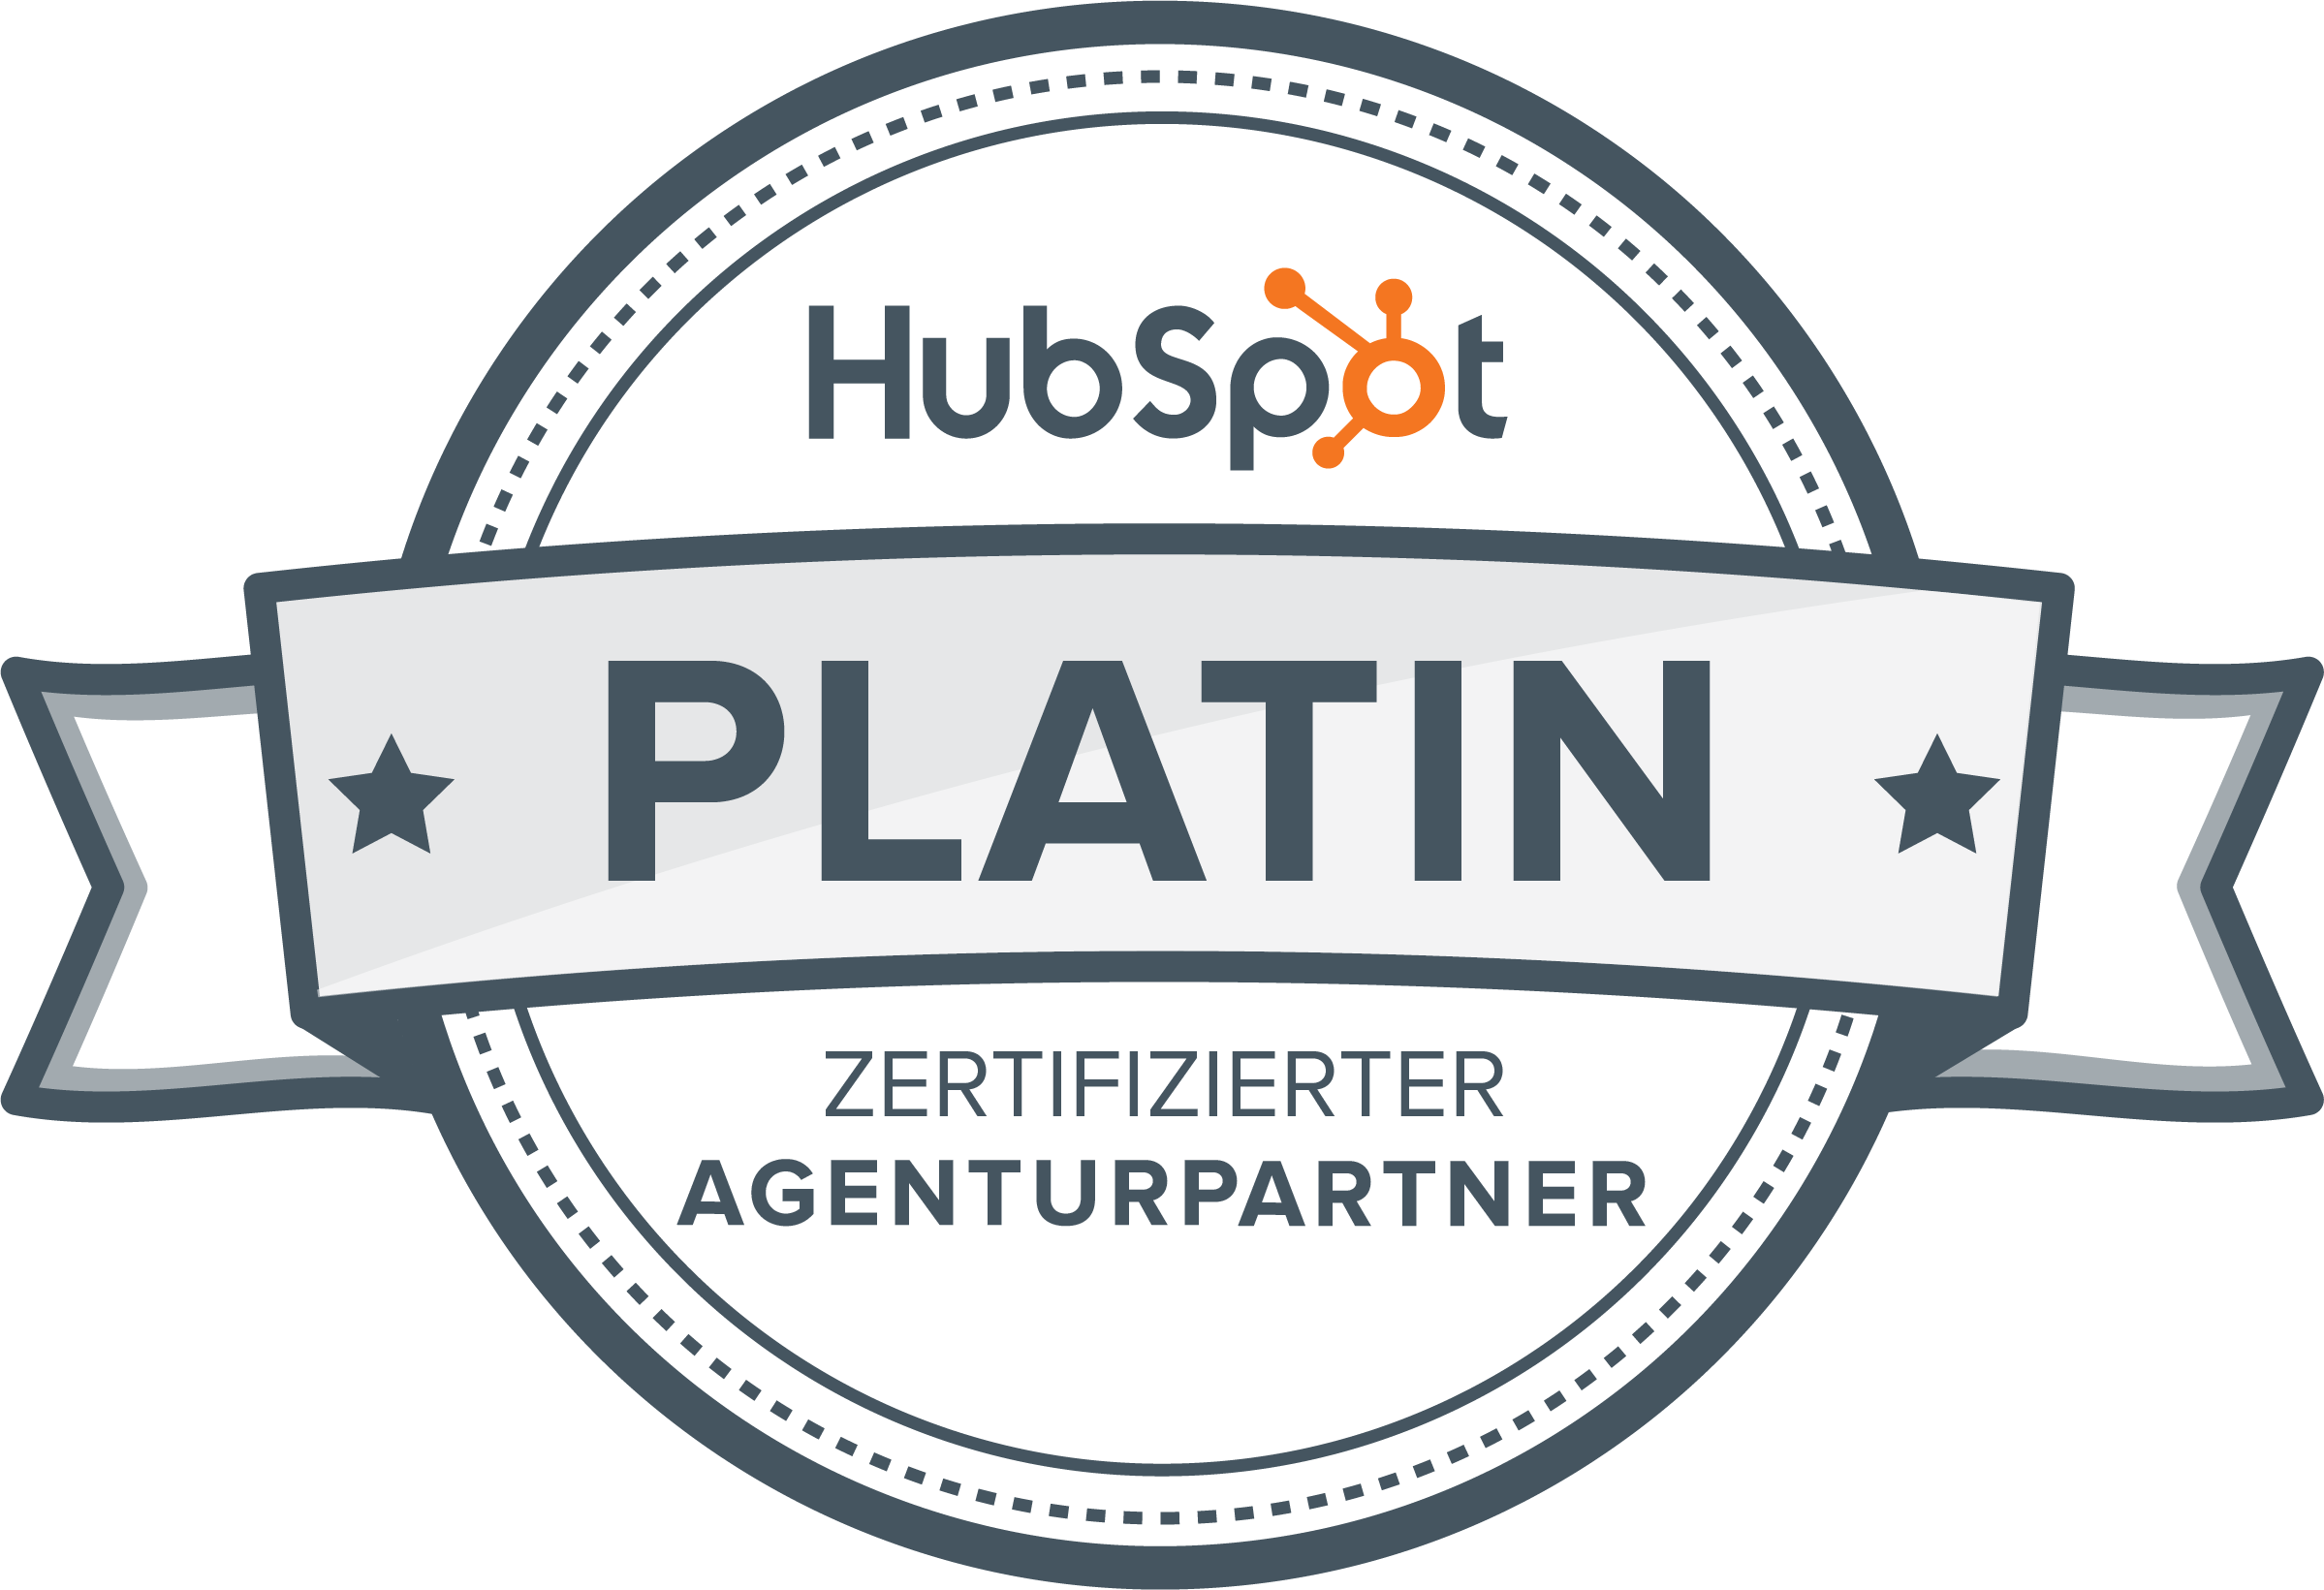 Thorit is a HubSpot Platinum Partner. 